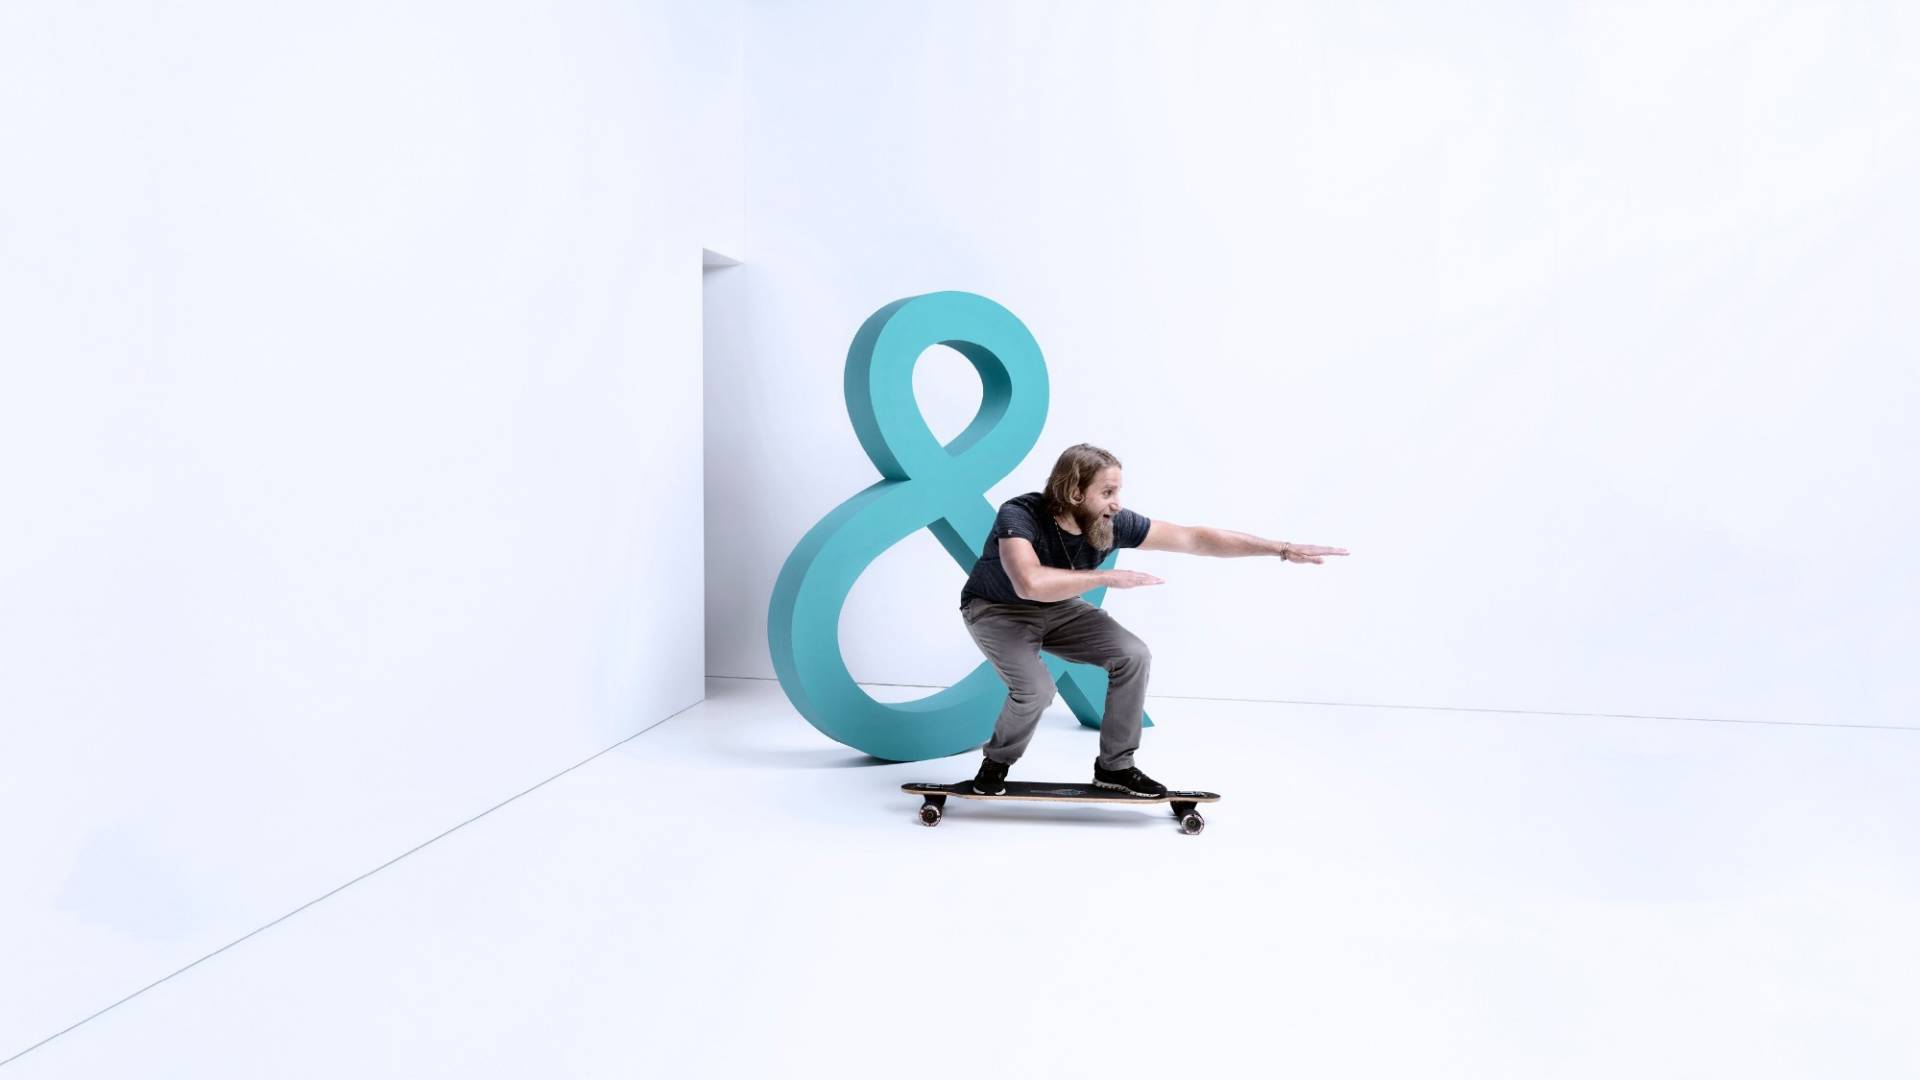 Ein Mann gleitet voller Freude mit einem Skateboard durch einen weissen Raum.